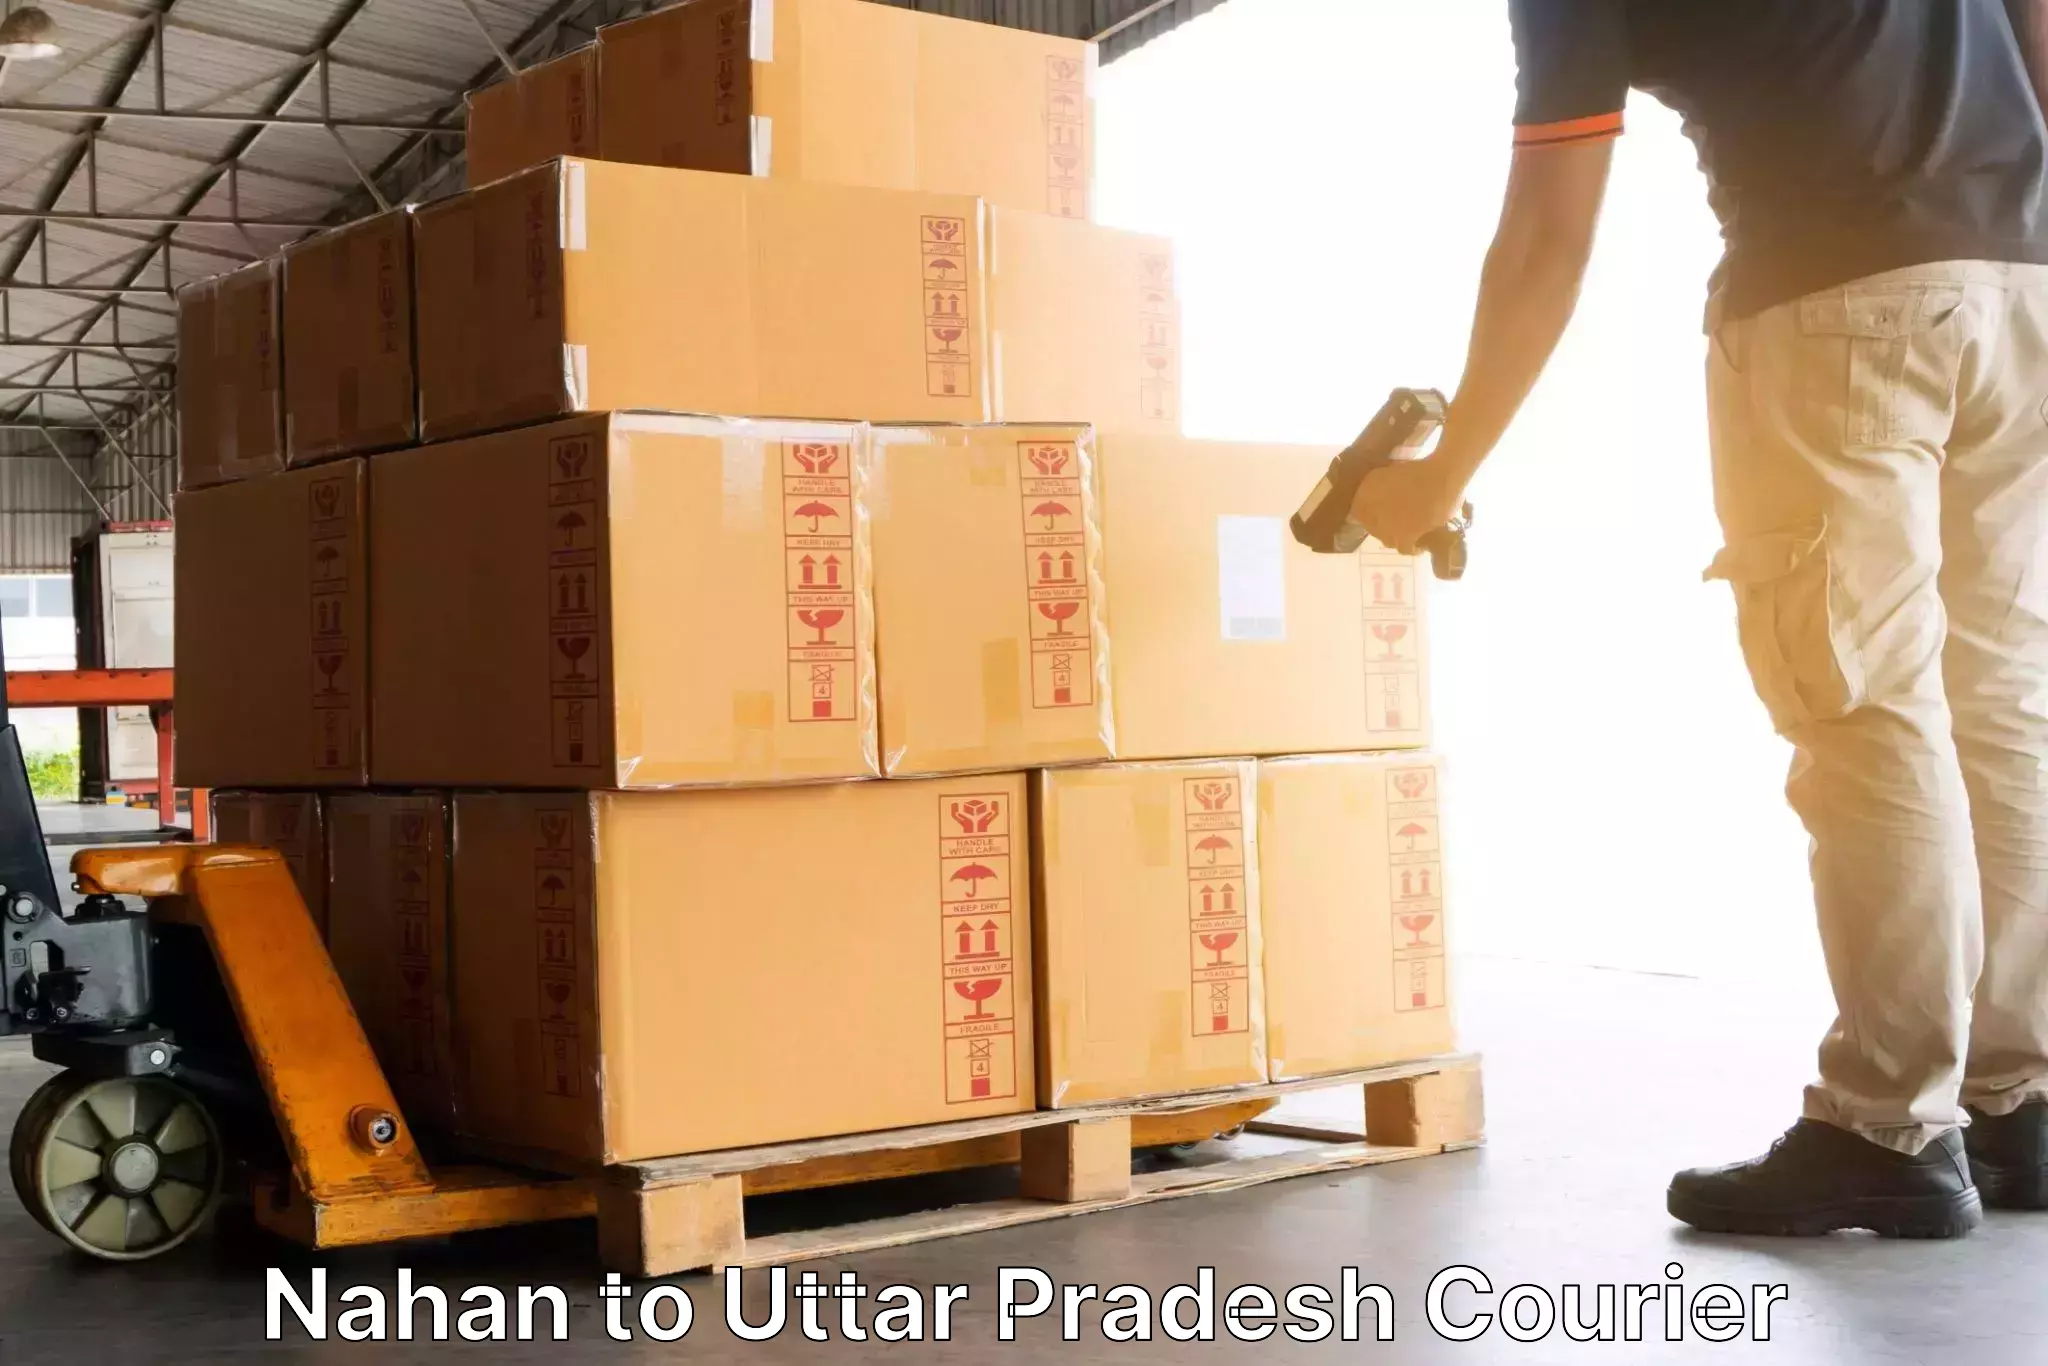 Efficient freight service Nahan to Firozabad